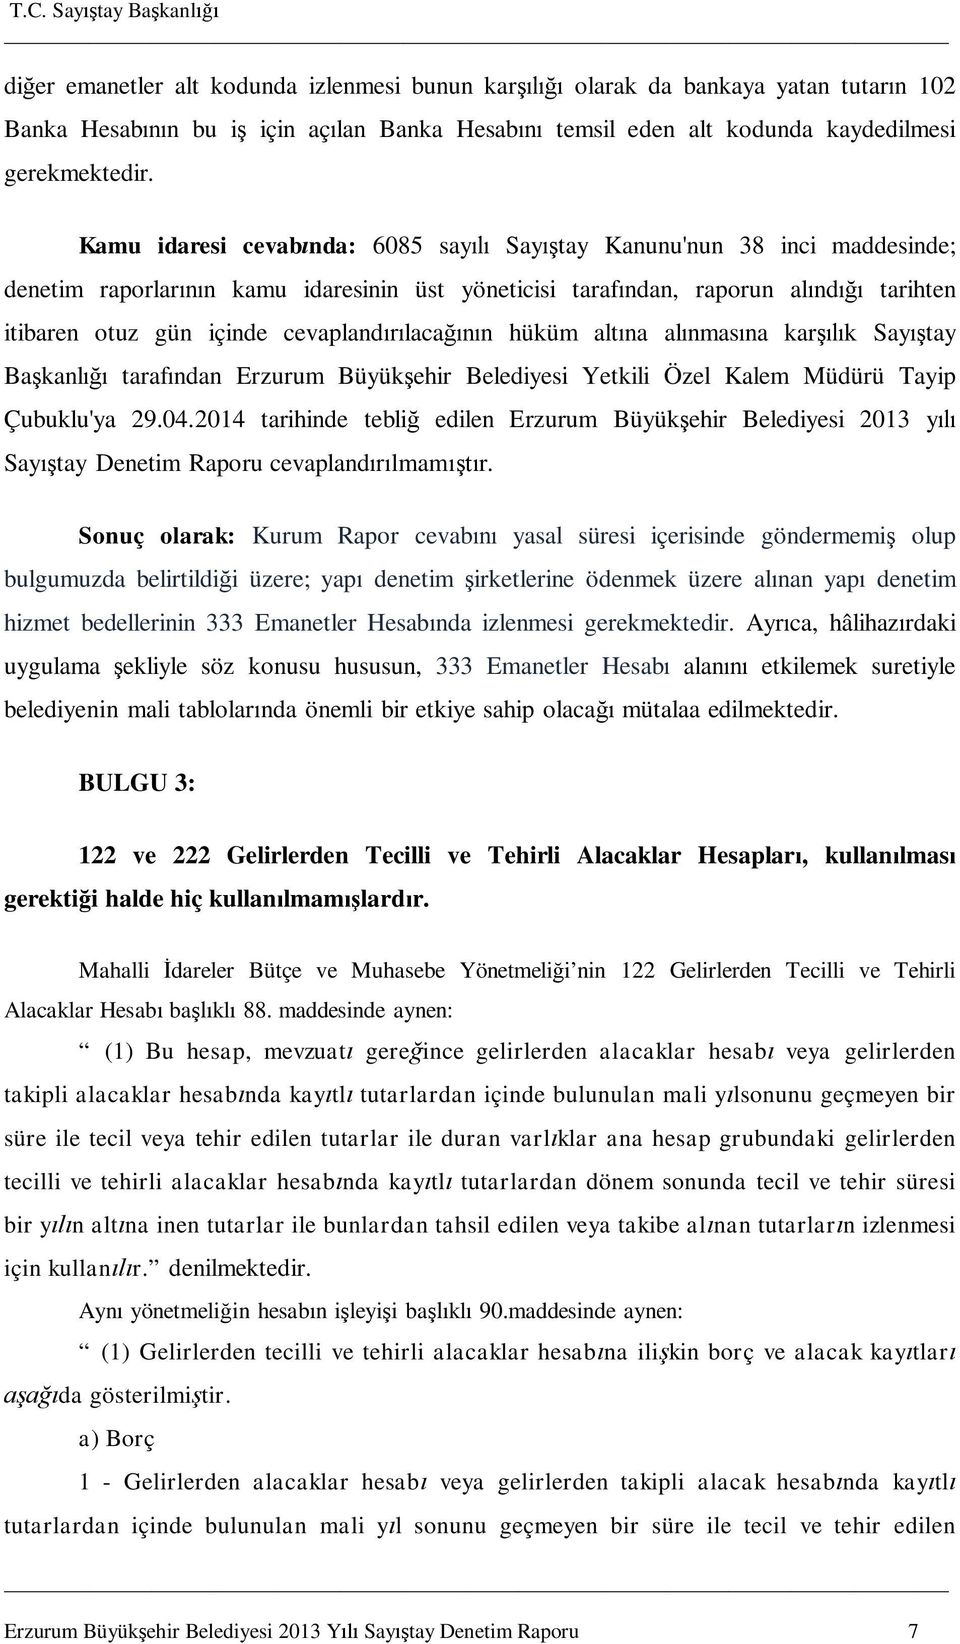 hüküm alt na al nmas na kar k Say tay Ba kanl taraf ndan Erzurum Büyük ehir Belediyesi Yetkili Özel Kalem Müdürü Tayip Çubuklu'ya 29.04.